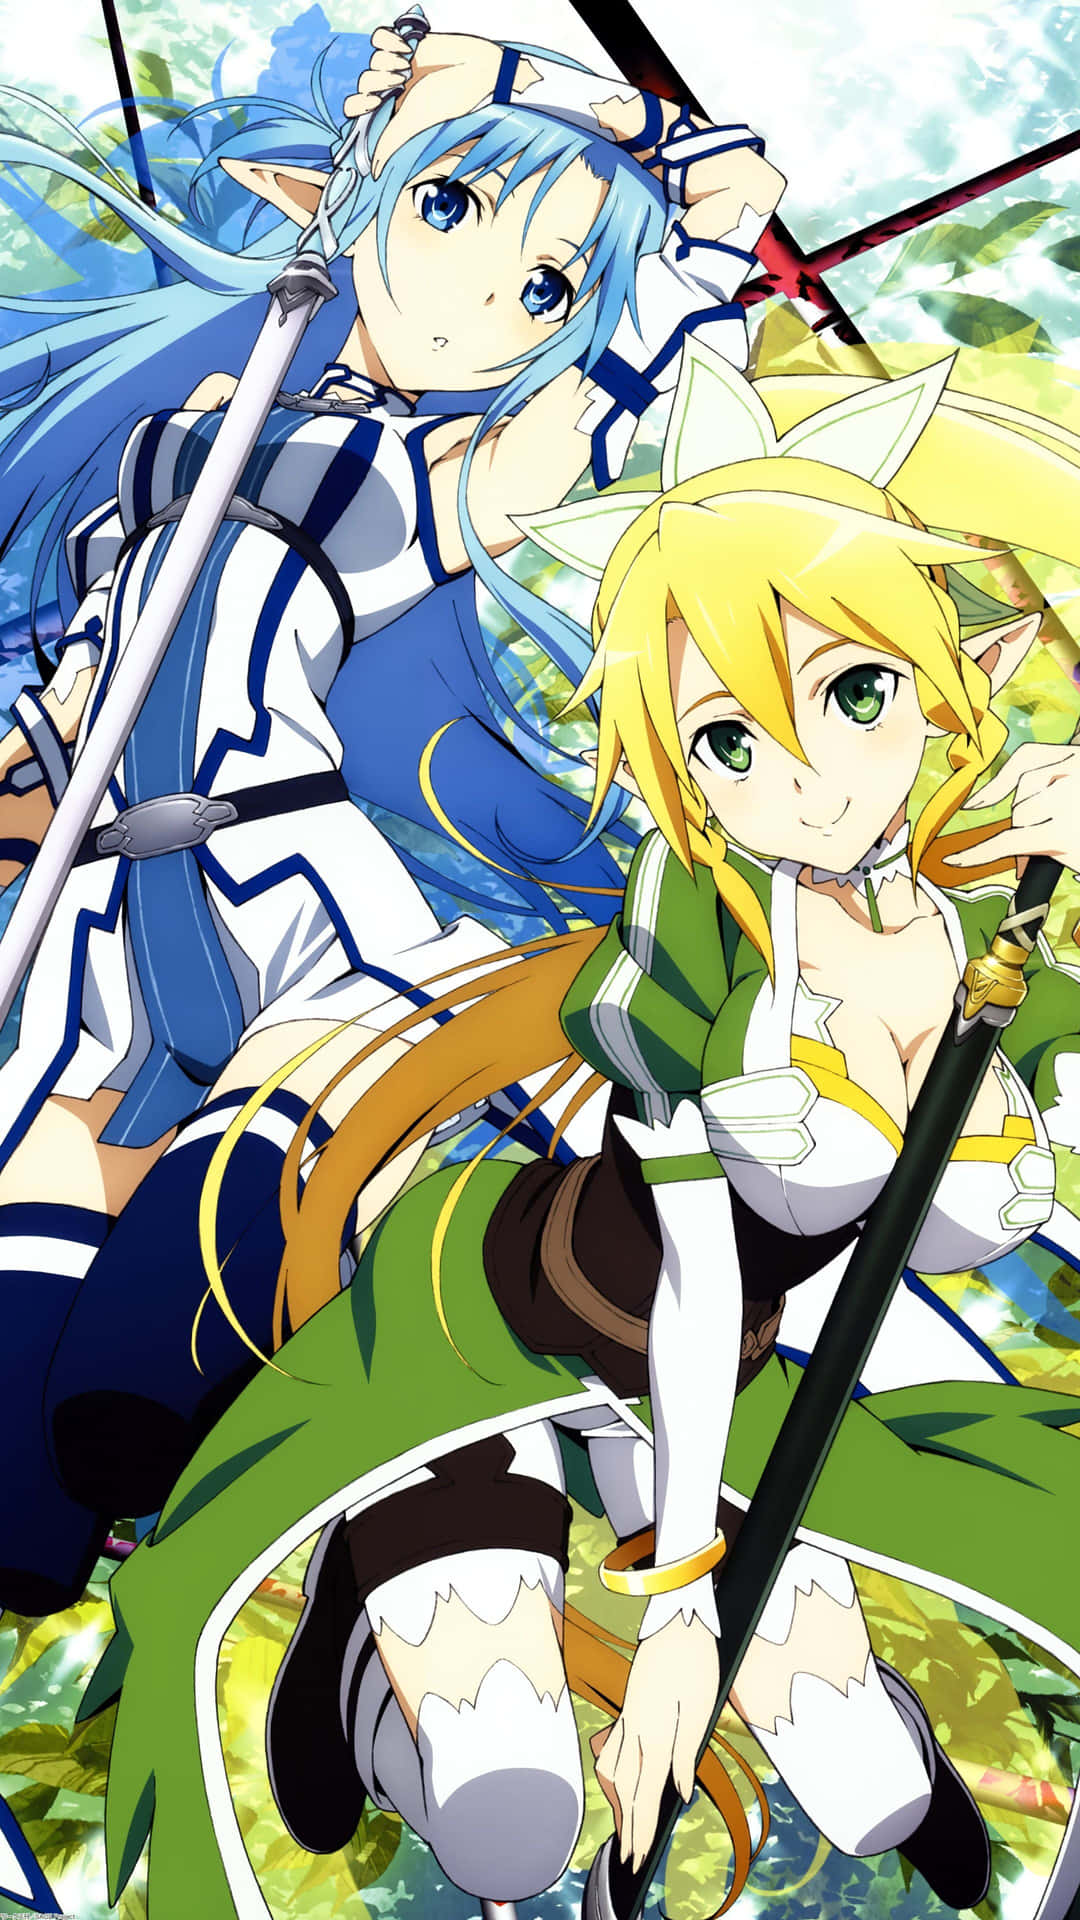 Imagende Sword Art Online Con Leafa Y Asuna.